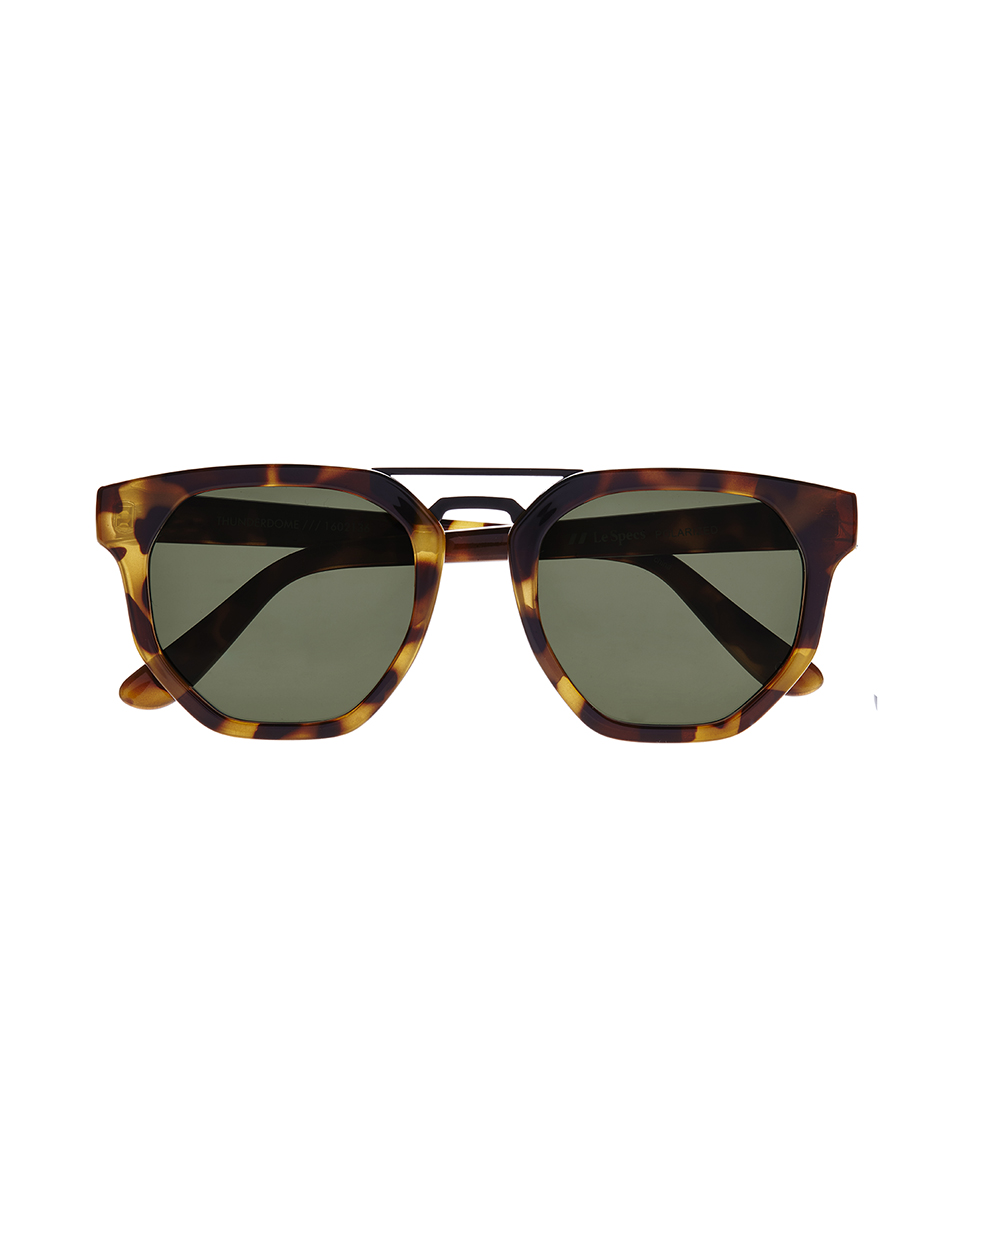 Le Specs Thunderdrome sunglasses, $89.